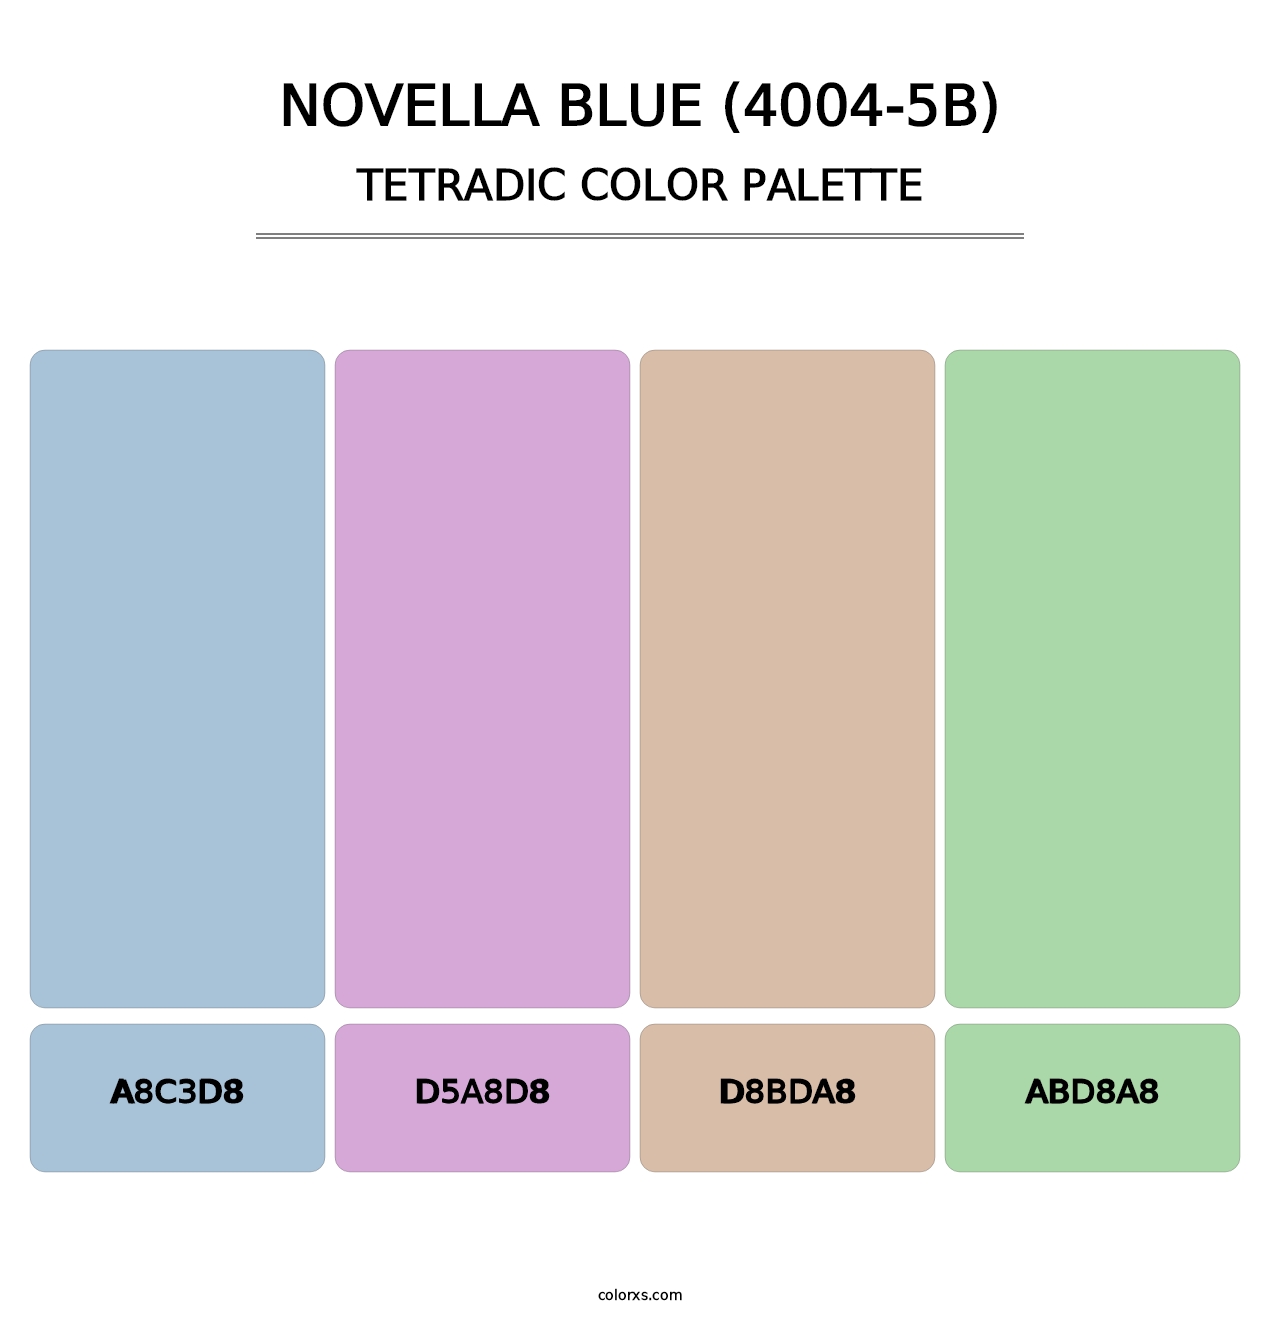 Novella Blue (4004-5B) - Tetradic Color Palette